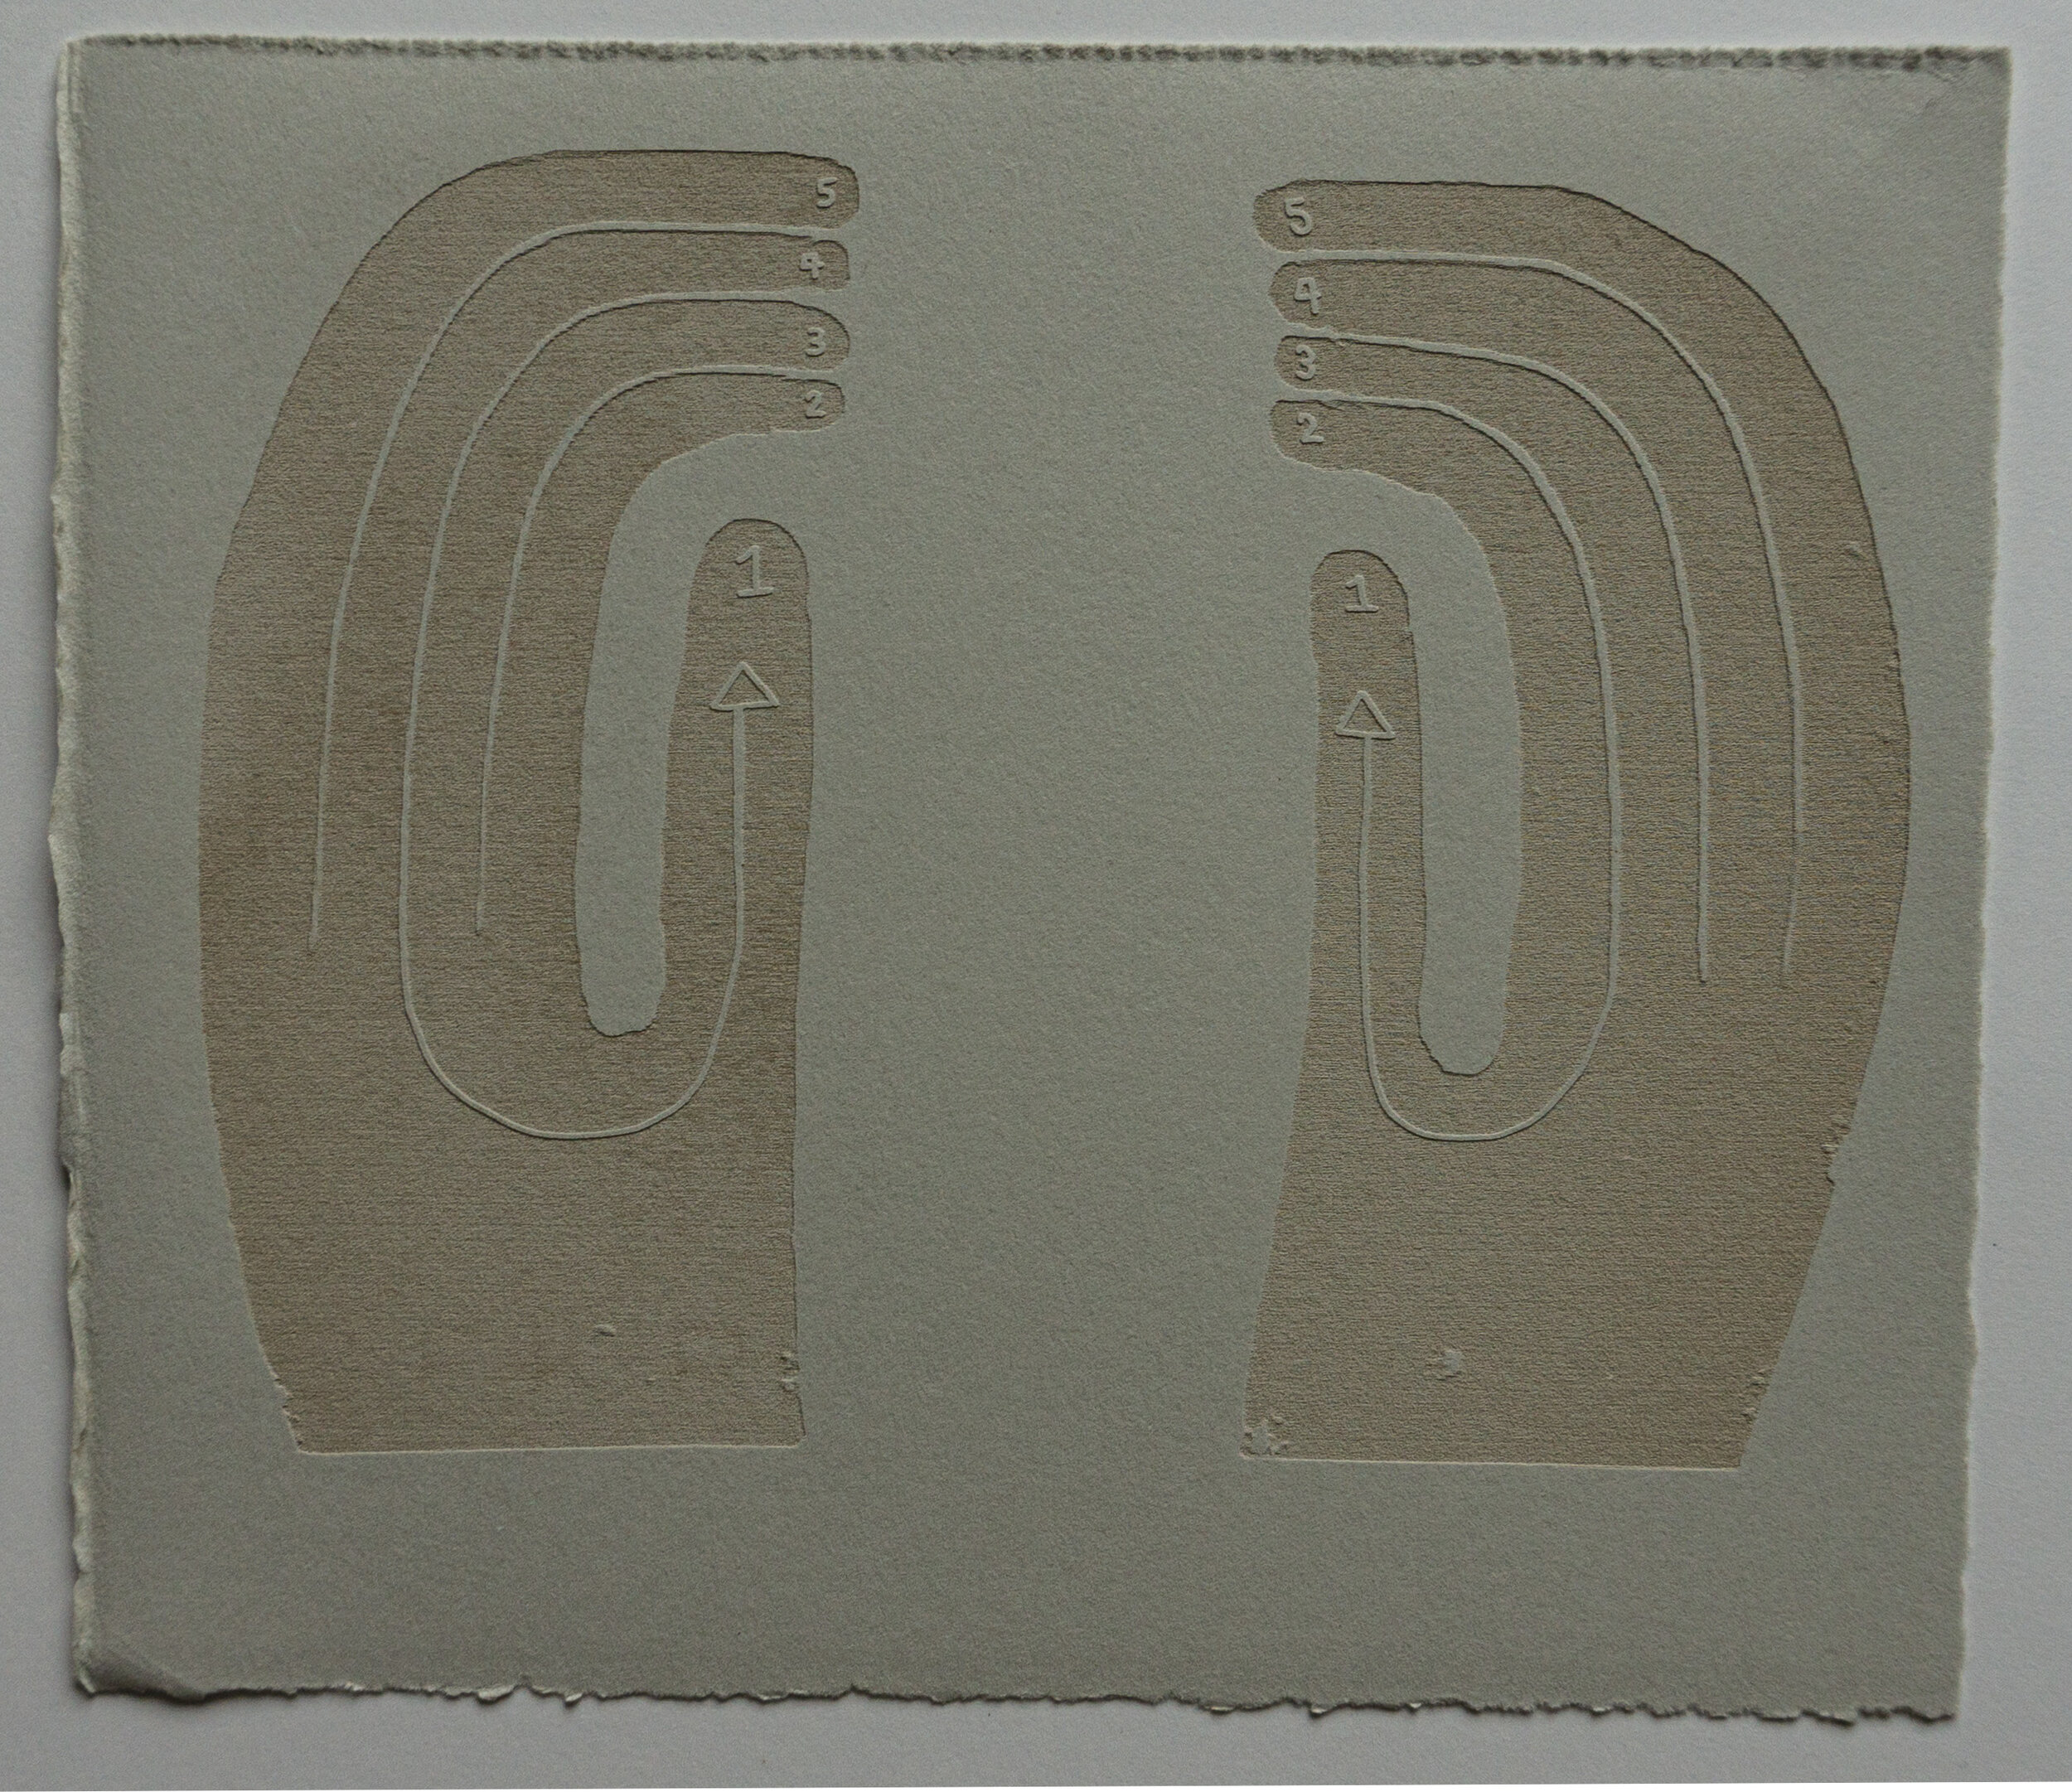 Hands 2, 2020, Laser engraved paper, 9" x 7.5"